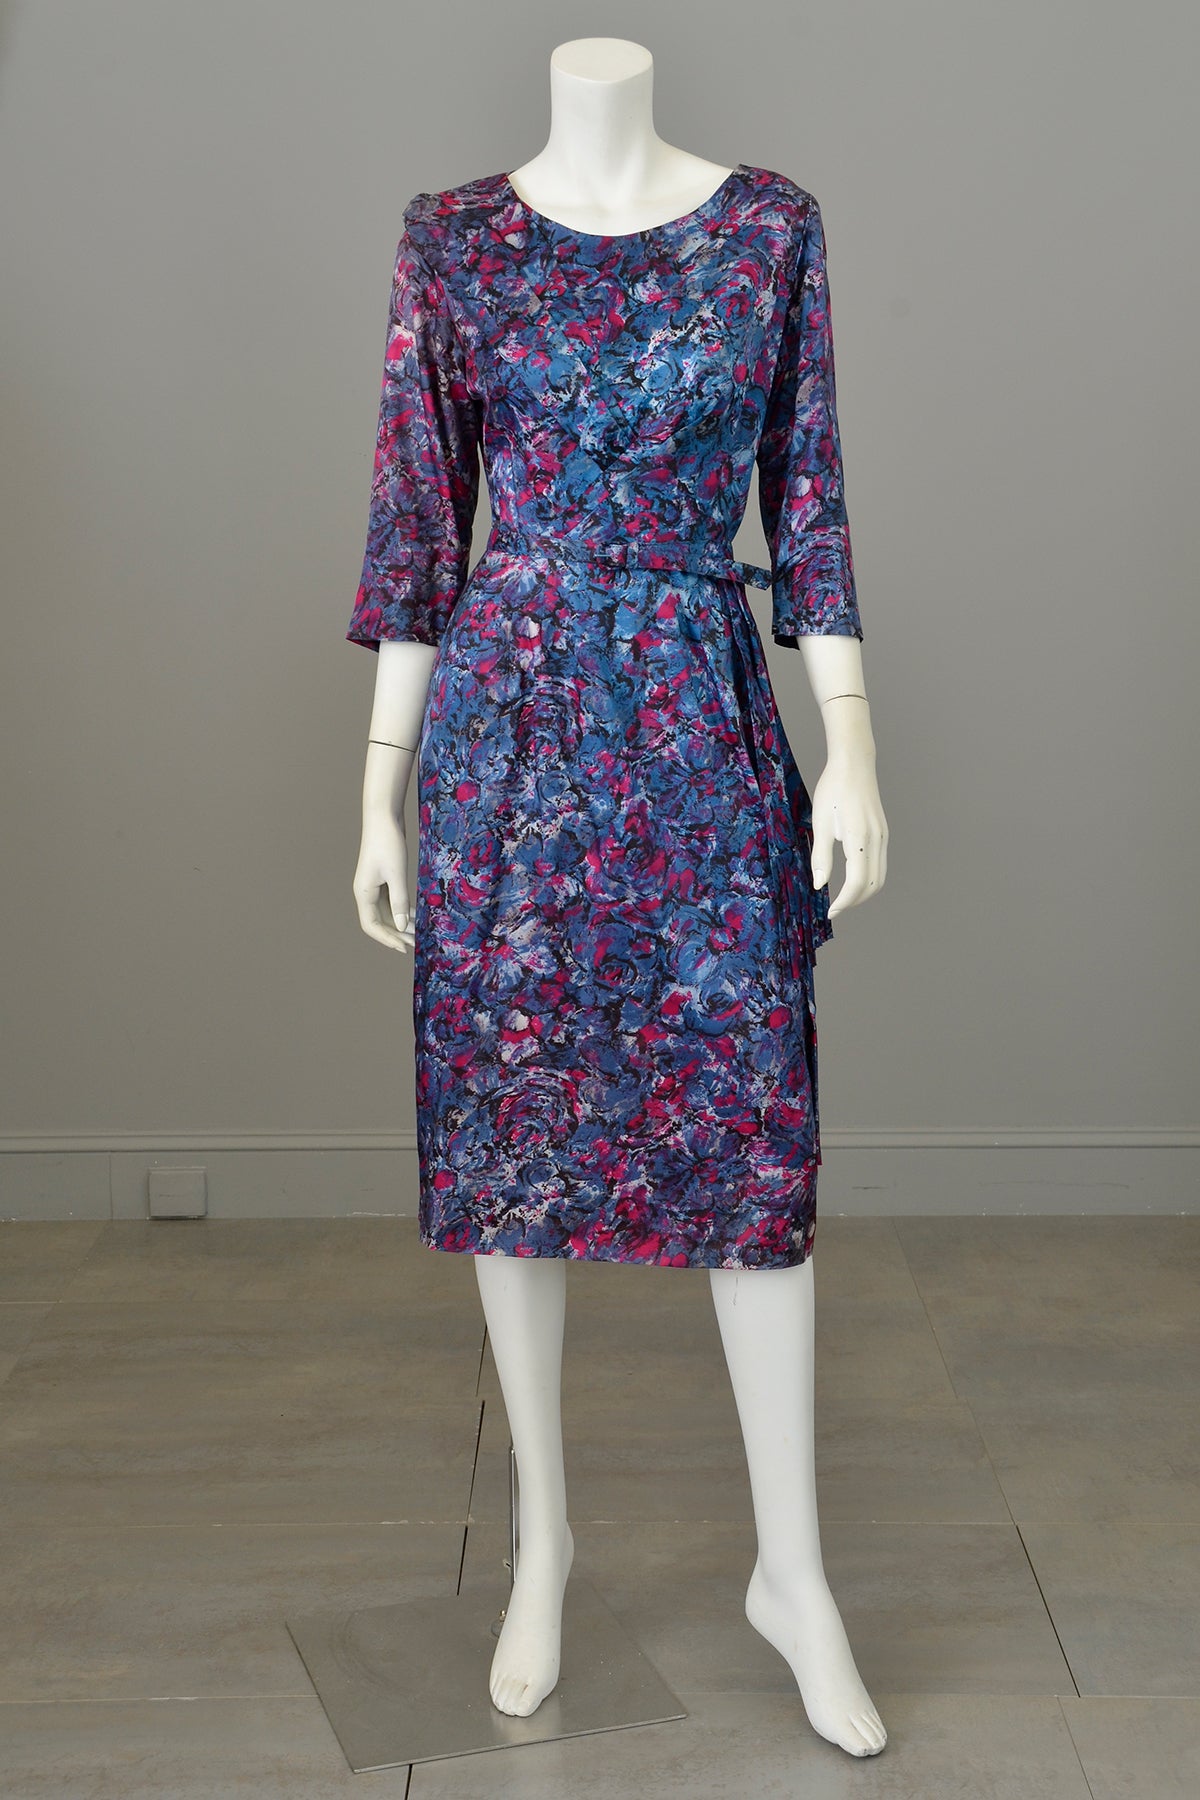 1940s Satin Impressionist Floral Dress with Fringe Sash